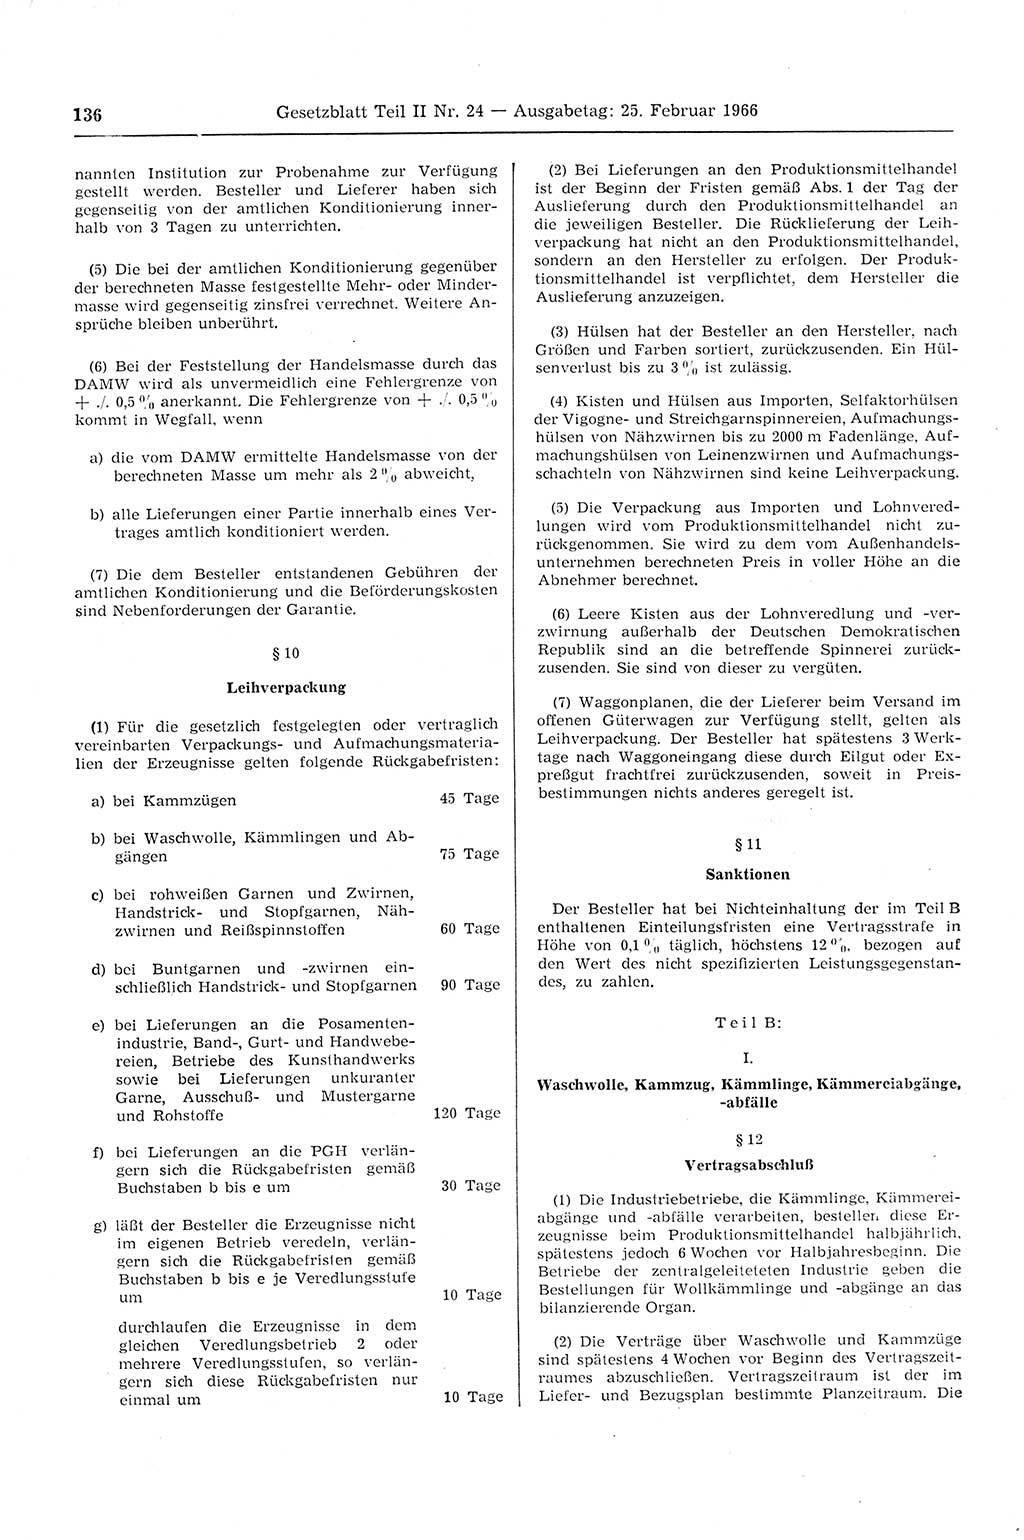 Gesetzblatt (GBl.) der Deutschen Demokratischen Republik (DDR) Teil ⅠⅠ 1966, Seite 136 (GBl. DDR ⅠⅠ 1966, S. 136)